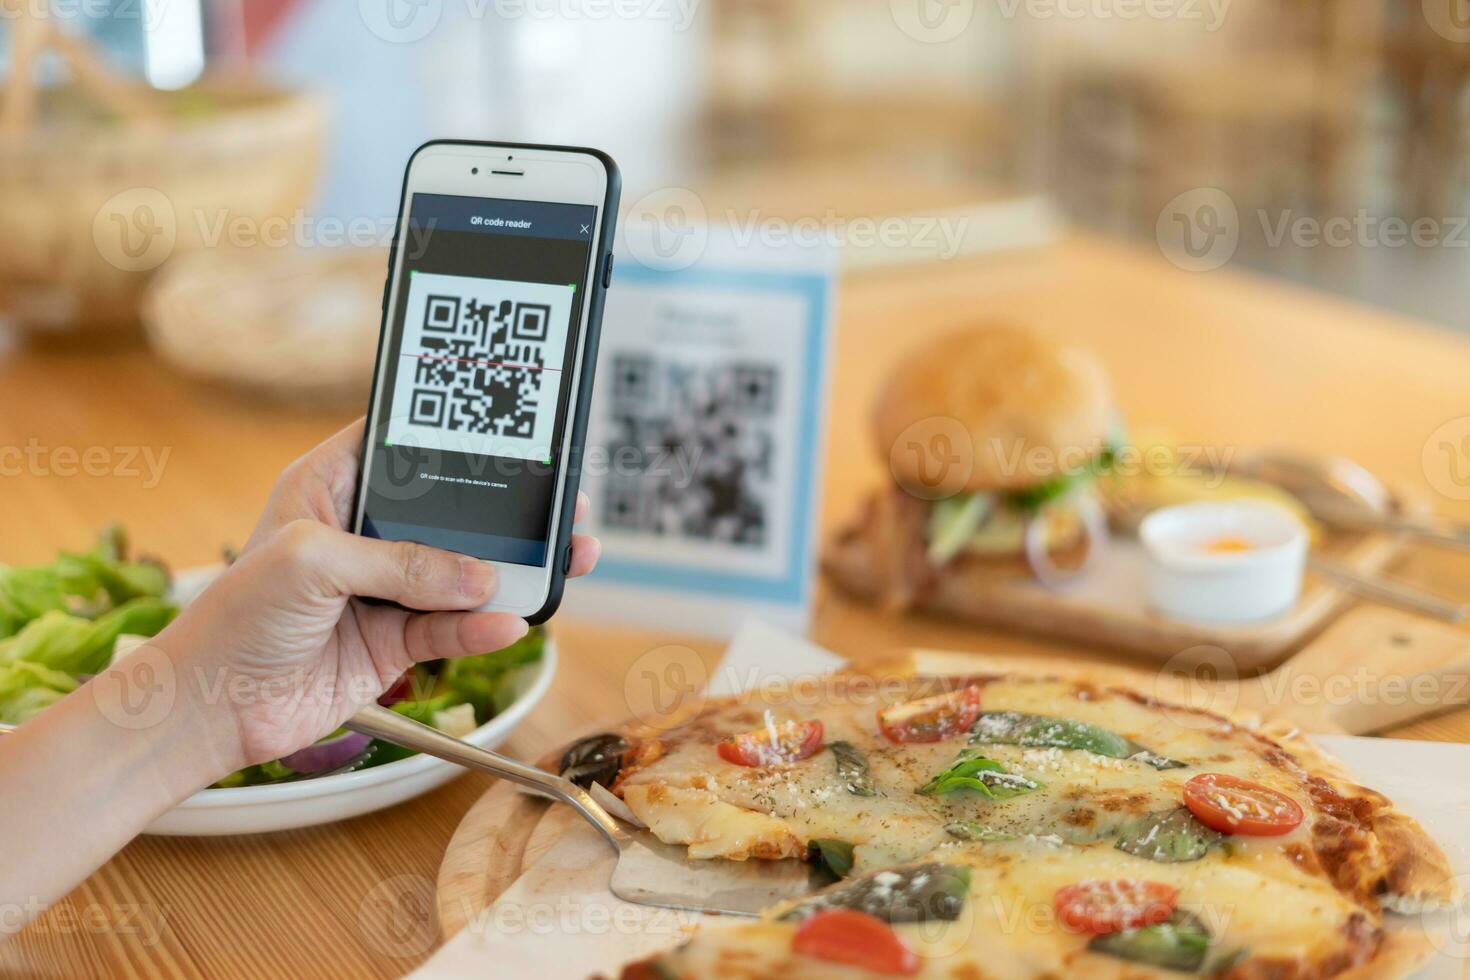 une femme utilise un smartphone pour scanner le code qr pour payer au café-restaurant avec un paiement numérique sans espèces. choisissez le menu et commandez accumulez la remise. portefeuille électronique, technologie, paiement en ligne, carte de crédit, application bancaire. photo